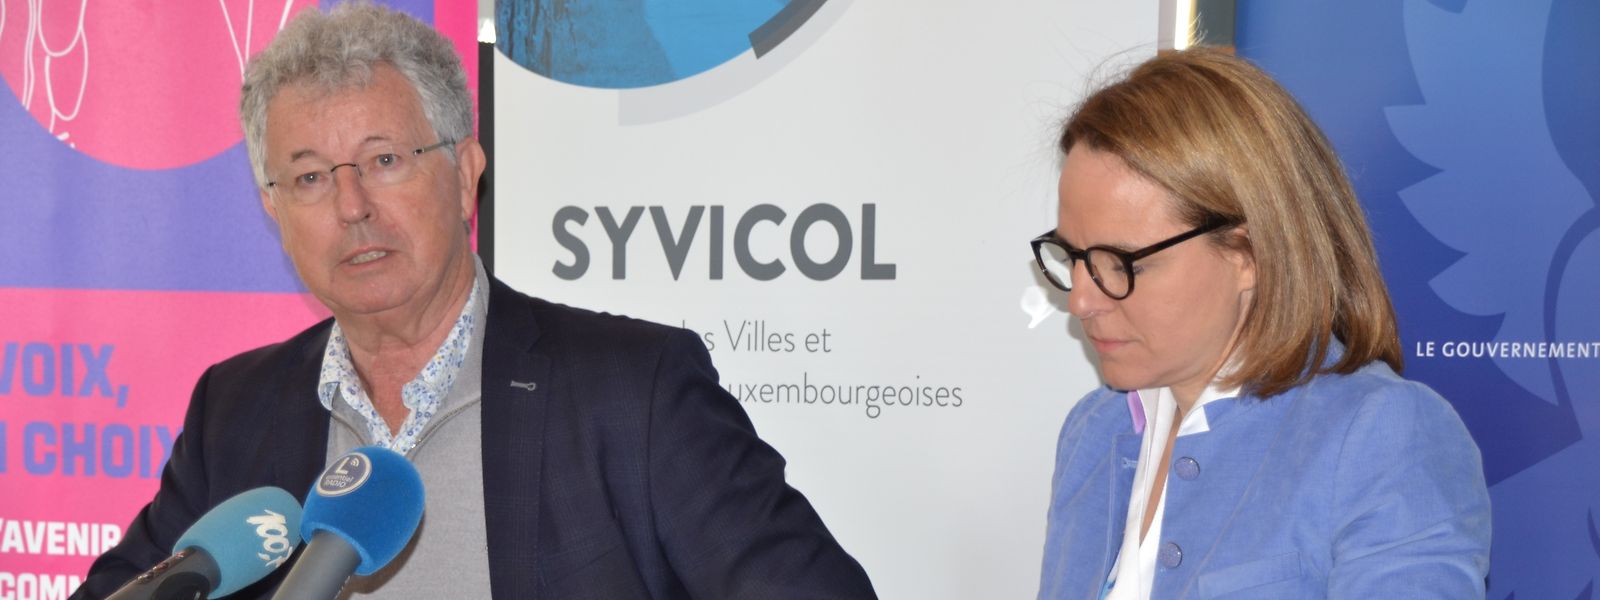 Familienministerin Corinne Cahen und Emile Eicher, Präsident des Gemeindeverbandes Syvicol, rufen die Nicht-Luxemburger dazu auf, sich als Wähler eintragen zu lassen. 